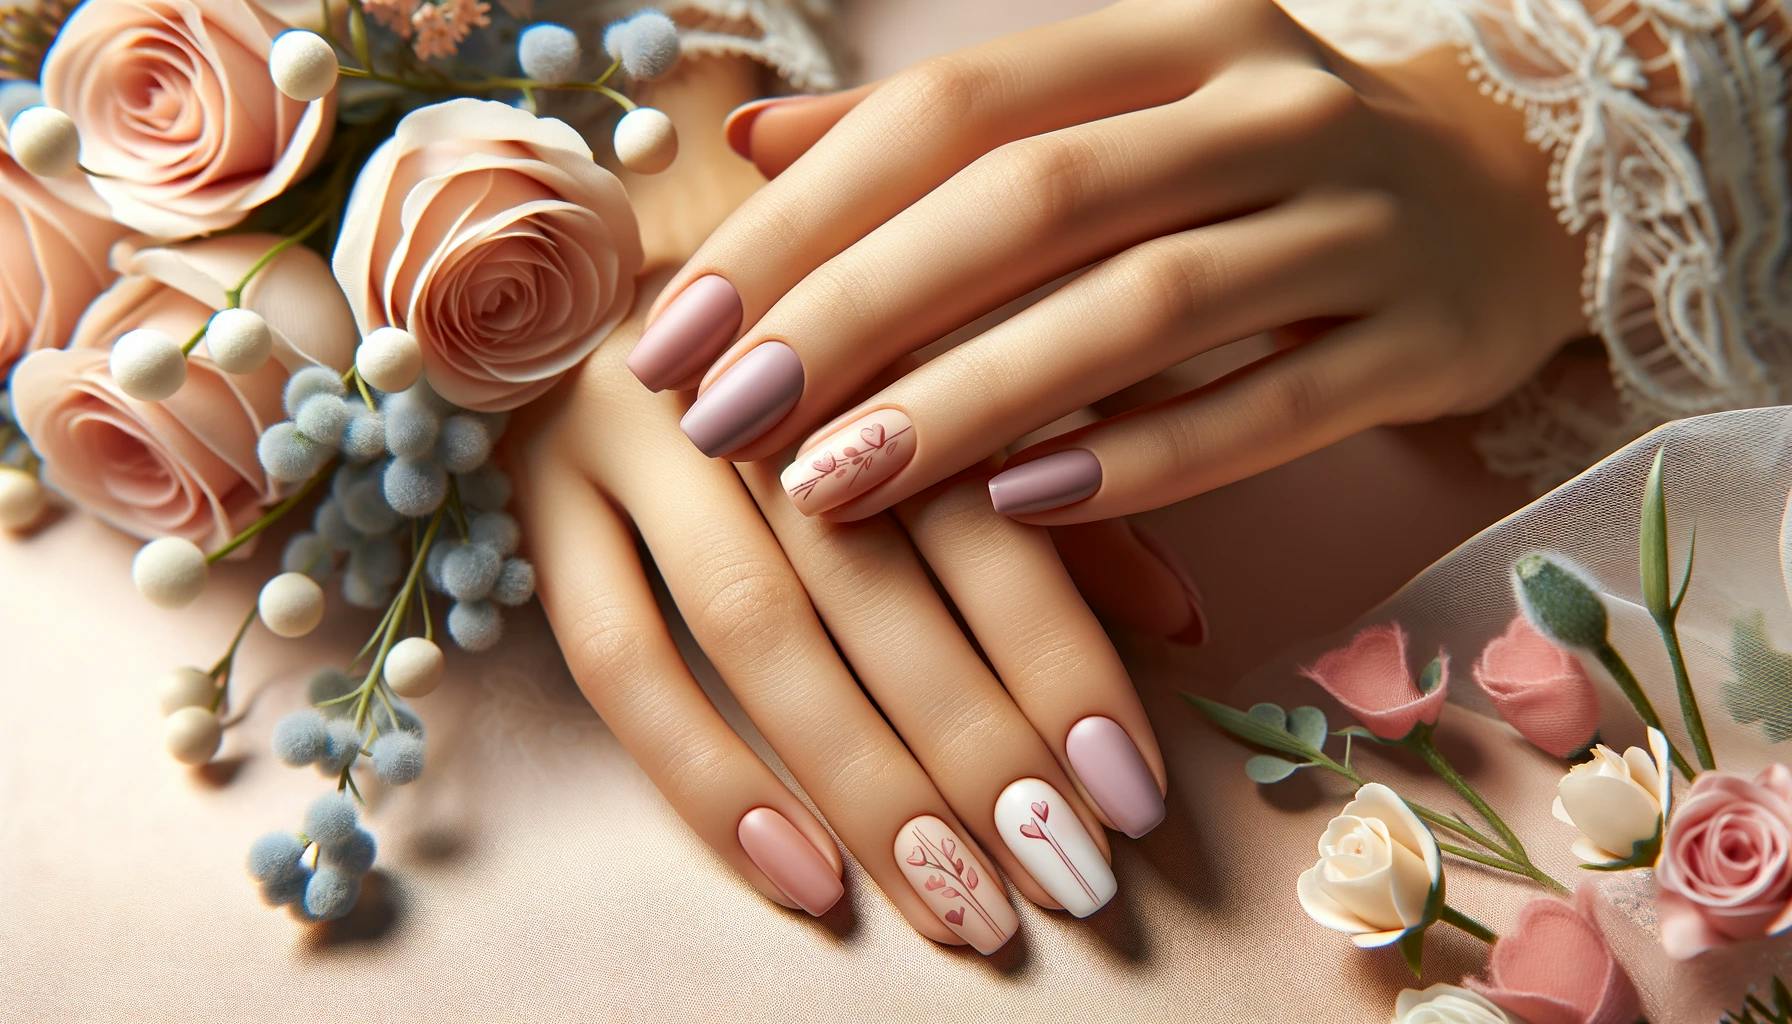 Eleganckie walentynkowe paznokcie z delikatnym różowym lakierem, zdobione subtelnym wzorem róż i serc, idealne dla romantycznego wieczoru